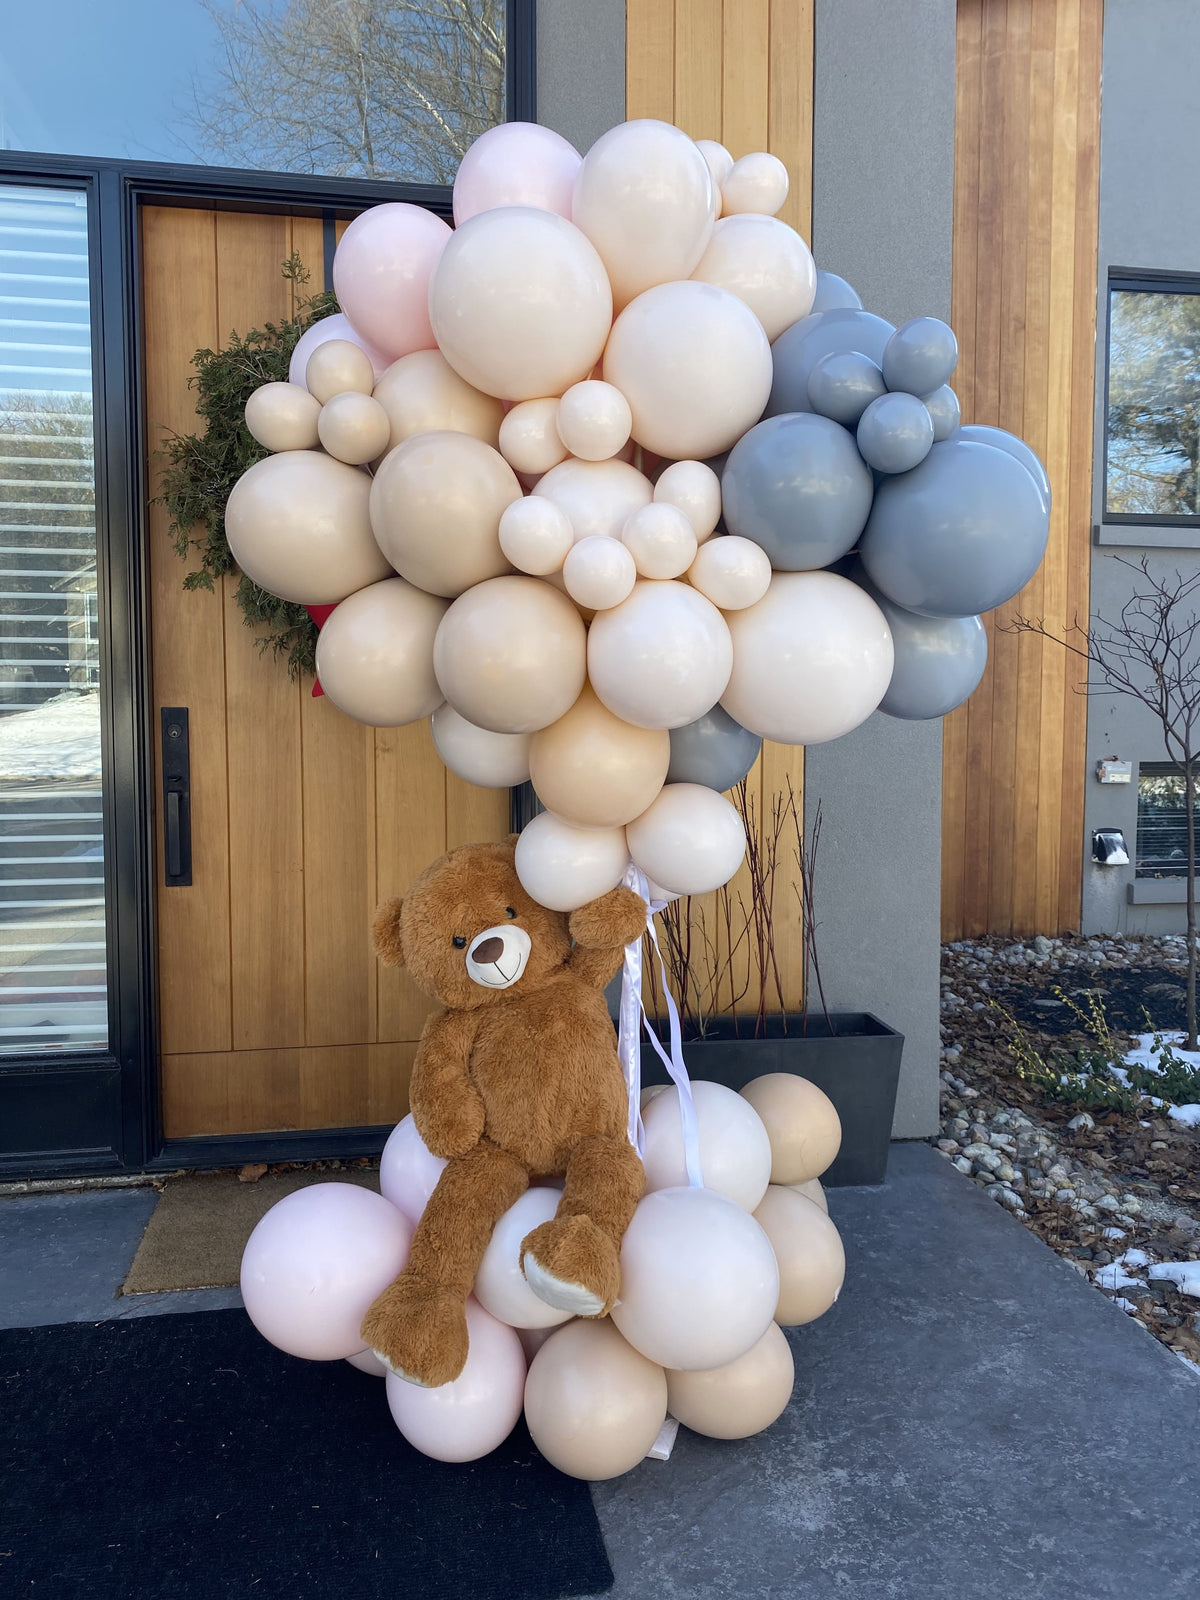 Balloon with teddy bear